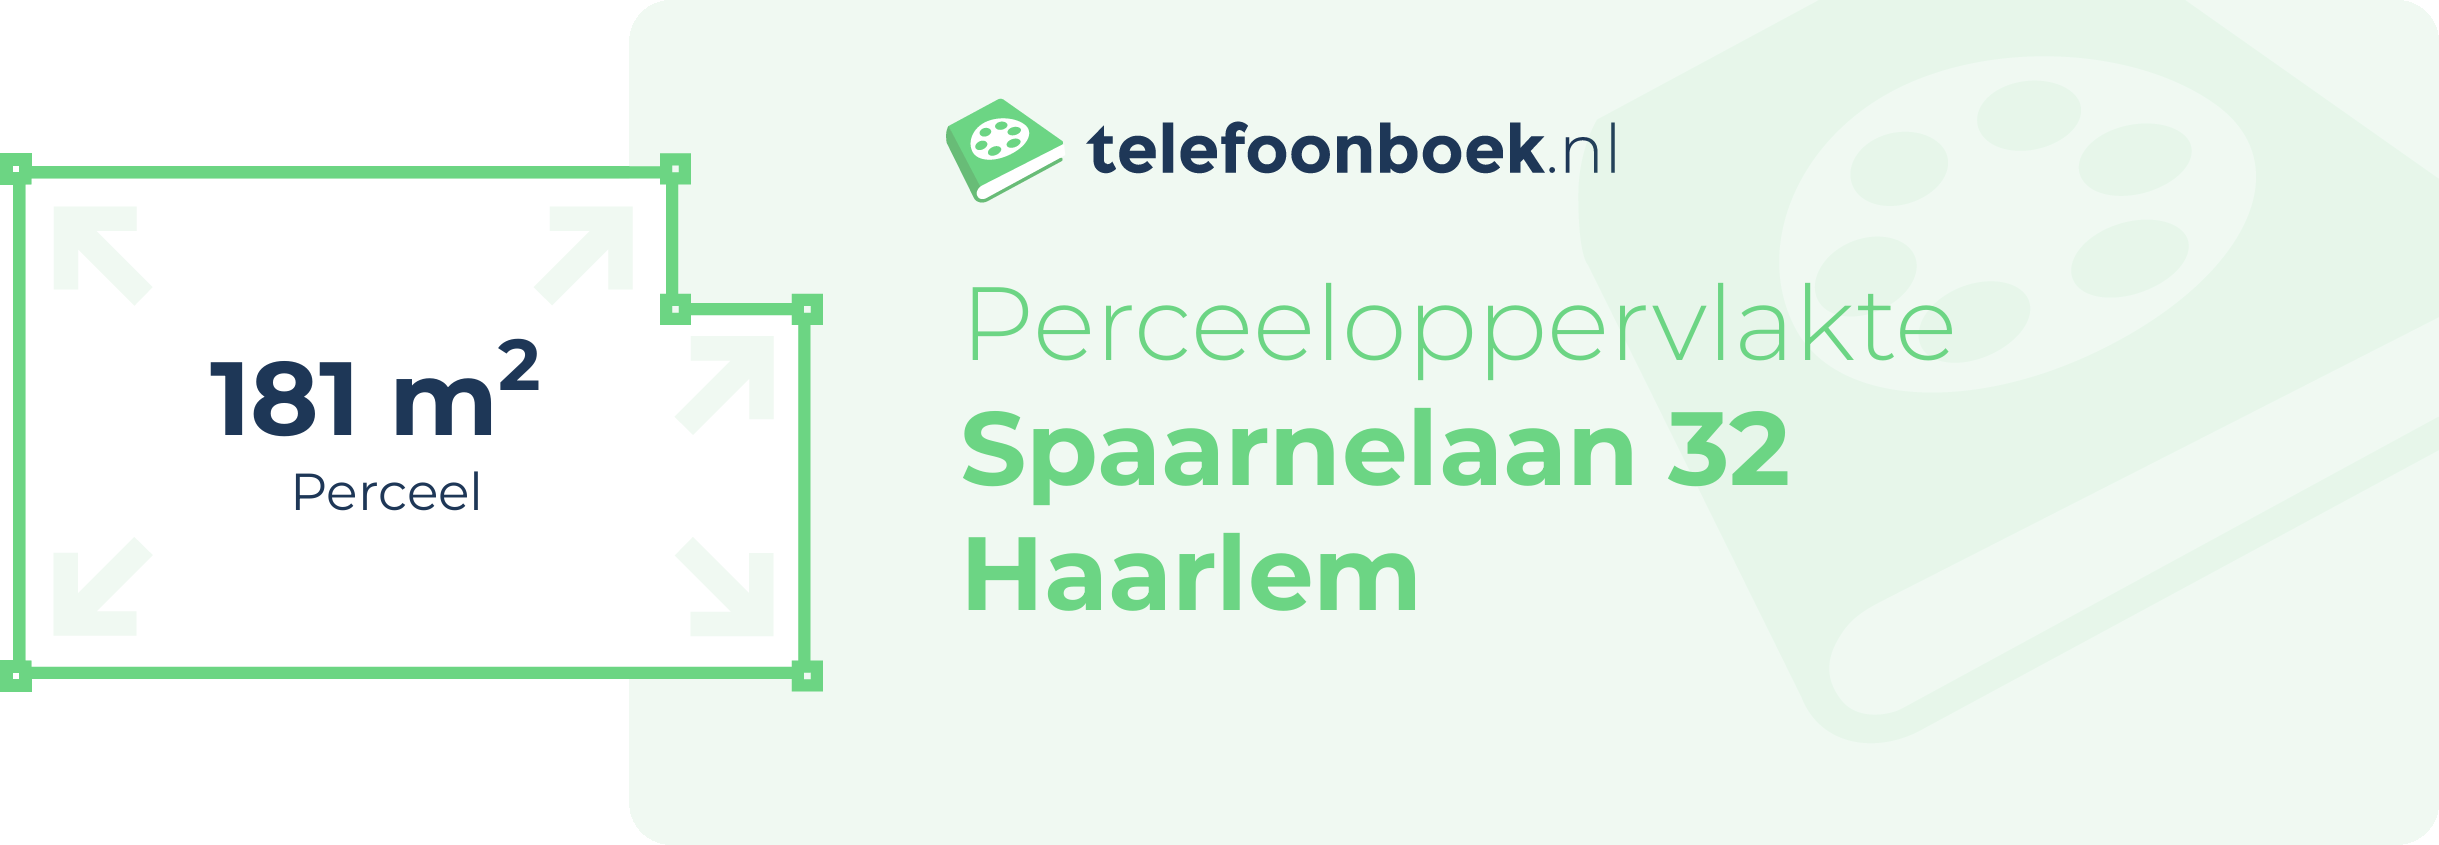 Perceeloppervlakte Spaarnelaan 32 Haarlem